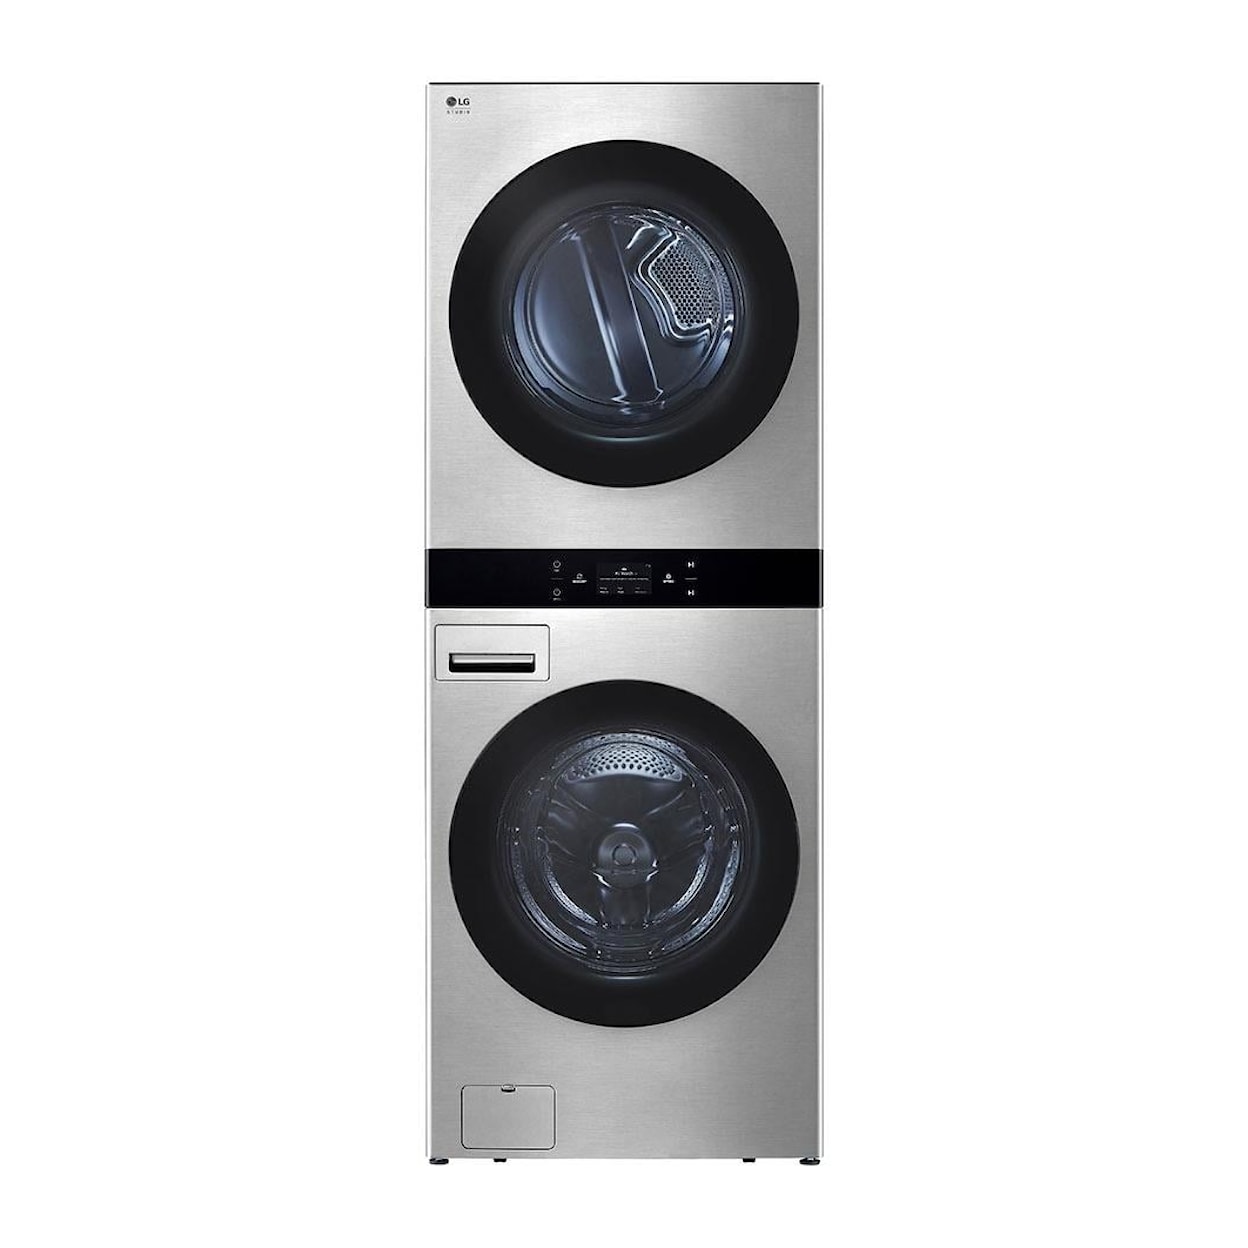 LG Appliances Laundry Washer & Dryer Combo